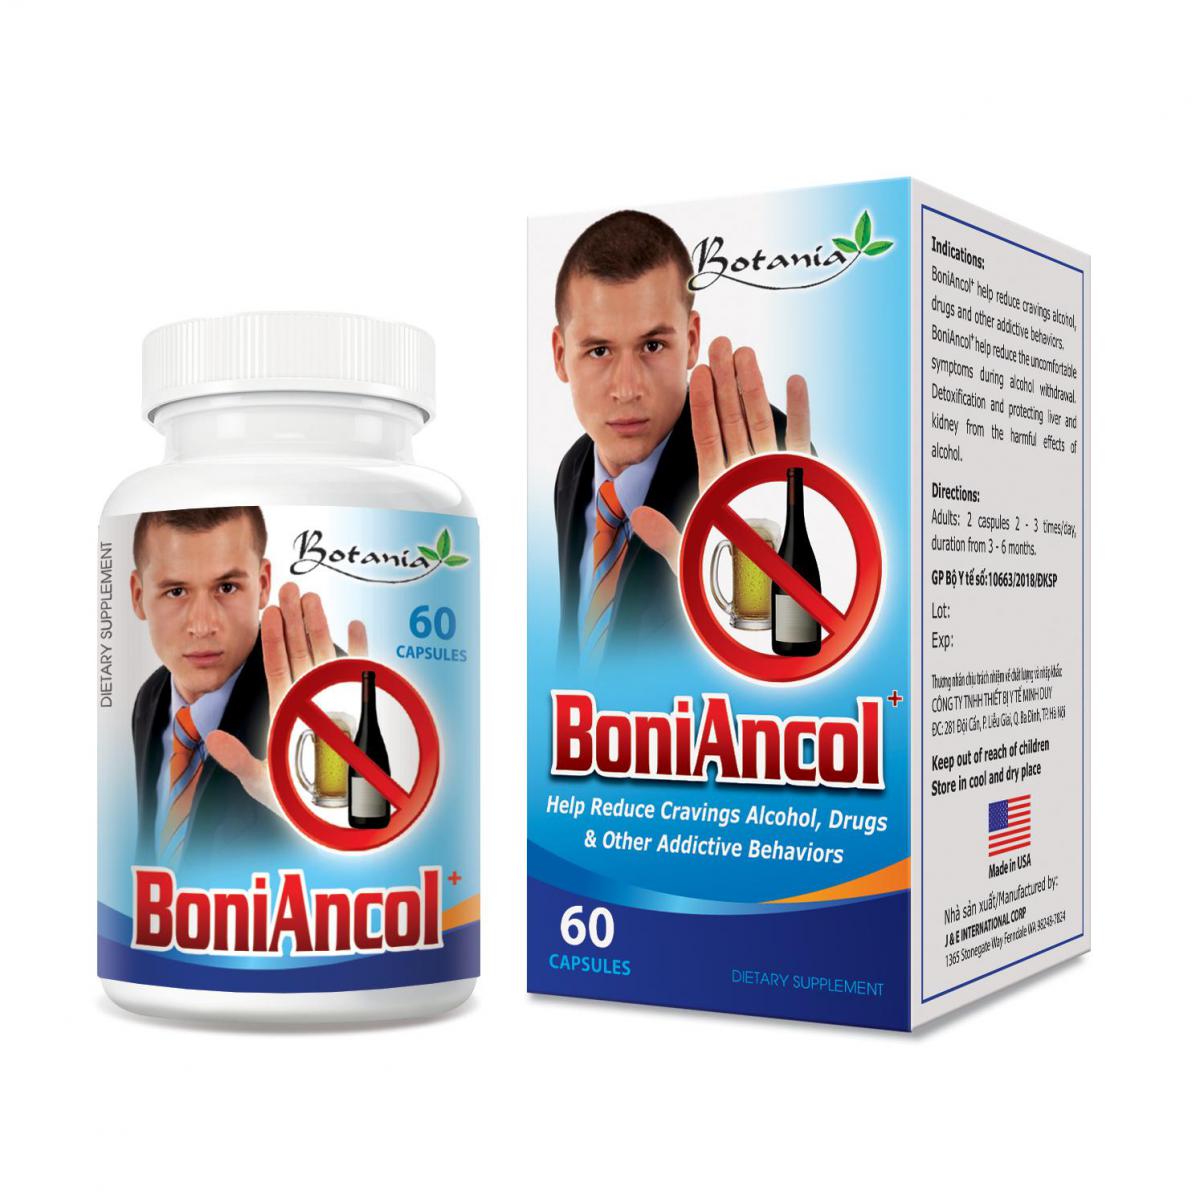  BoniAncol + - Giải pháp tối ưu nhất giúp giải rượu bia hiệu quả, tiện lợi